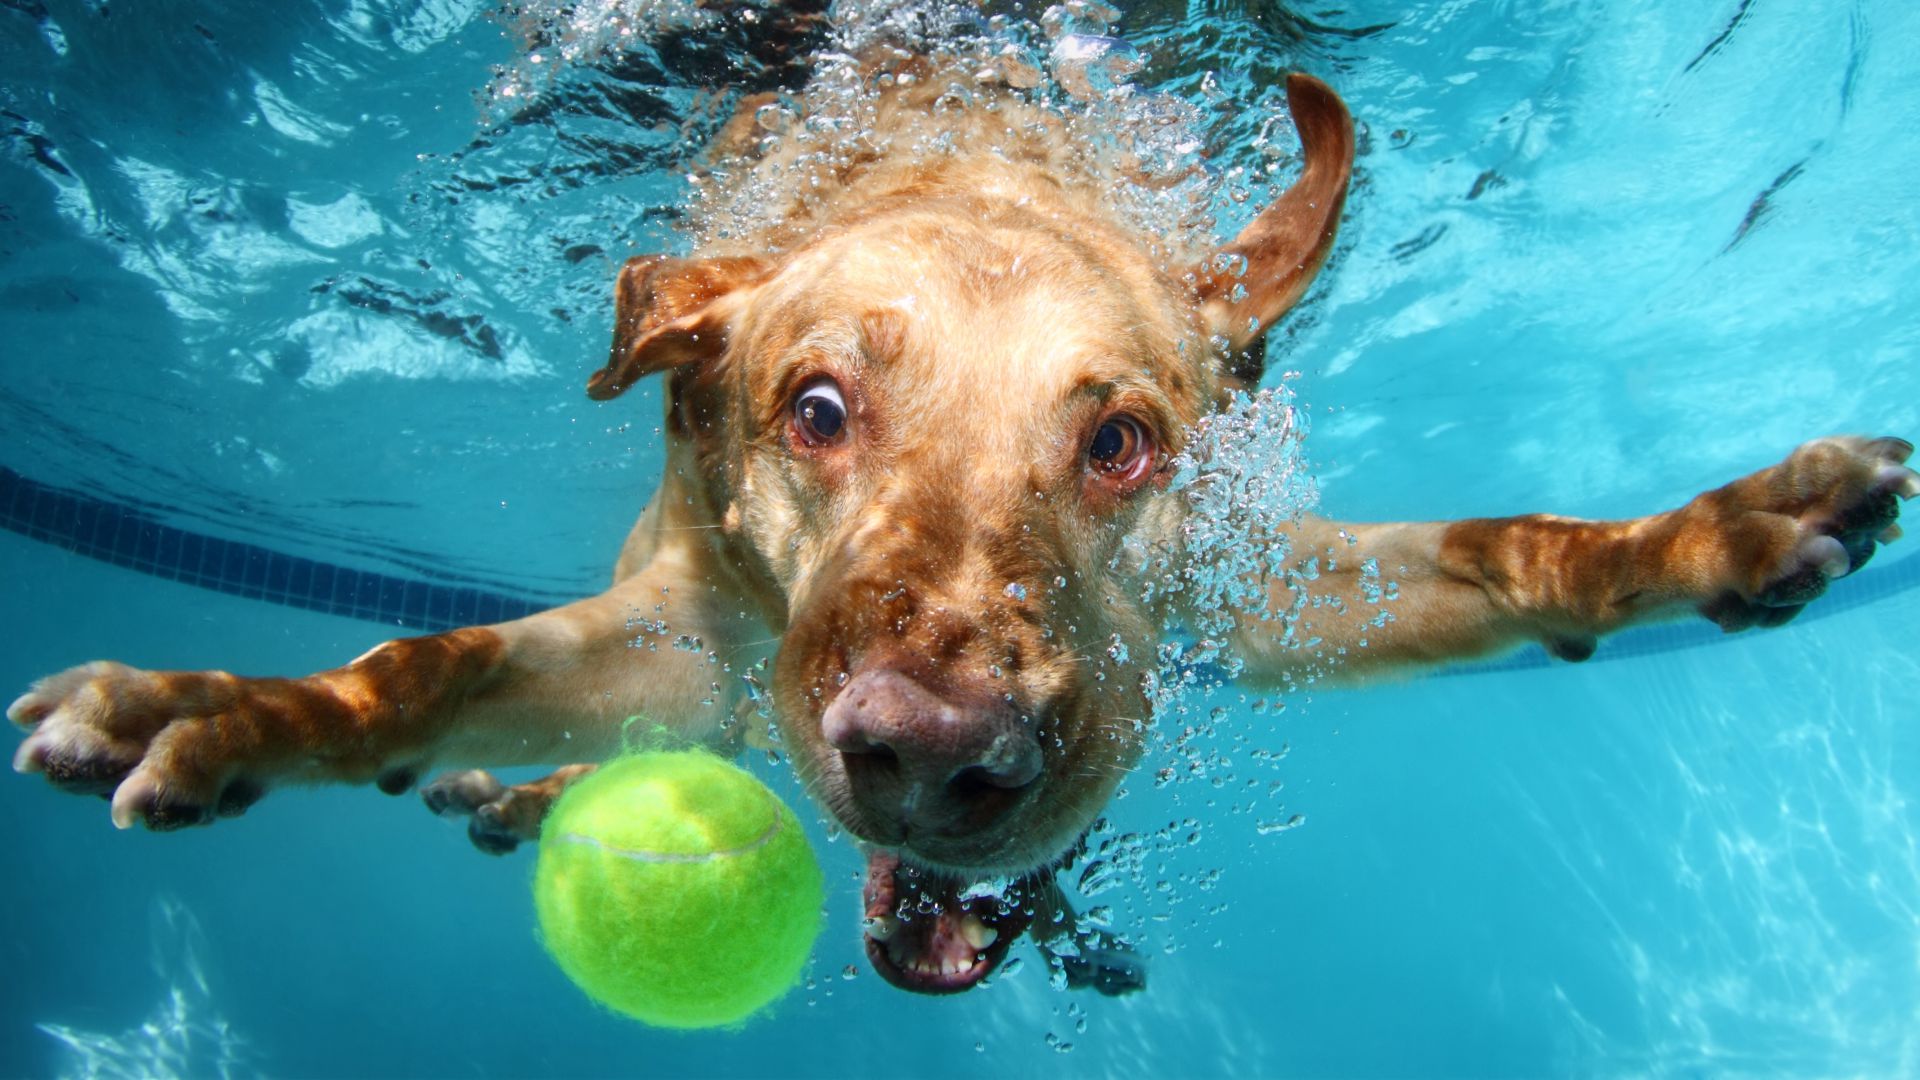 Лабрадор, собака, под водой, милые животные, забавный, Labrador, dog, underwater, cute animals, funny (horizontal)